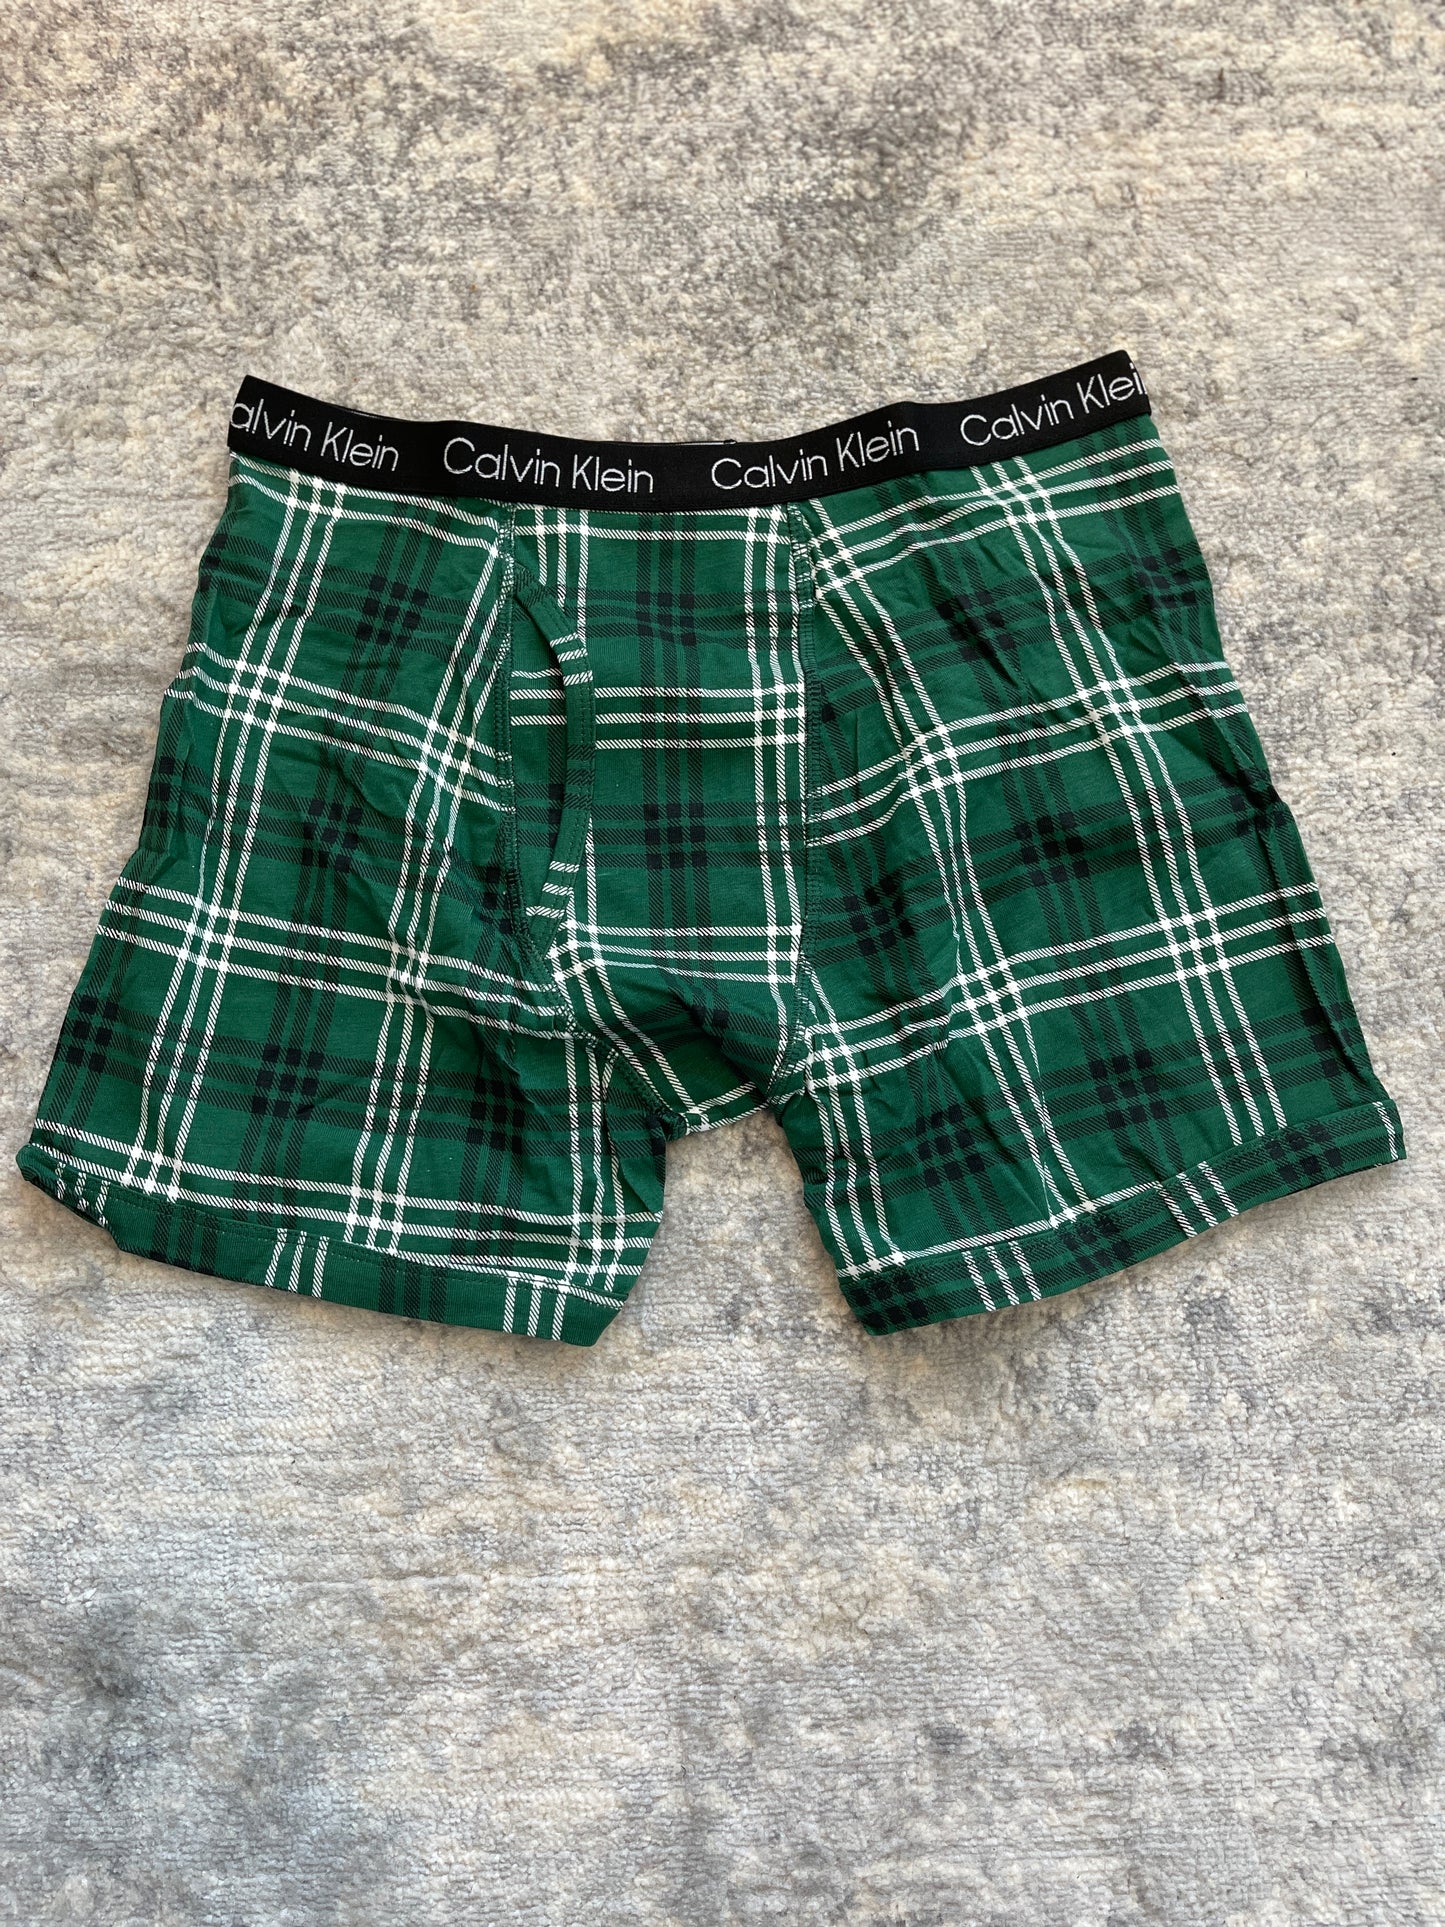 Calvin Klein Boy's Green Plaid Boxer Brief Underwear XL 16/18- PPU Montgomery